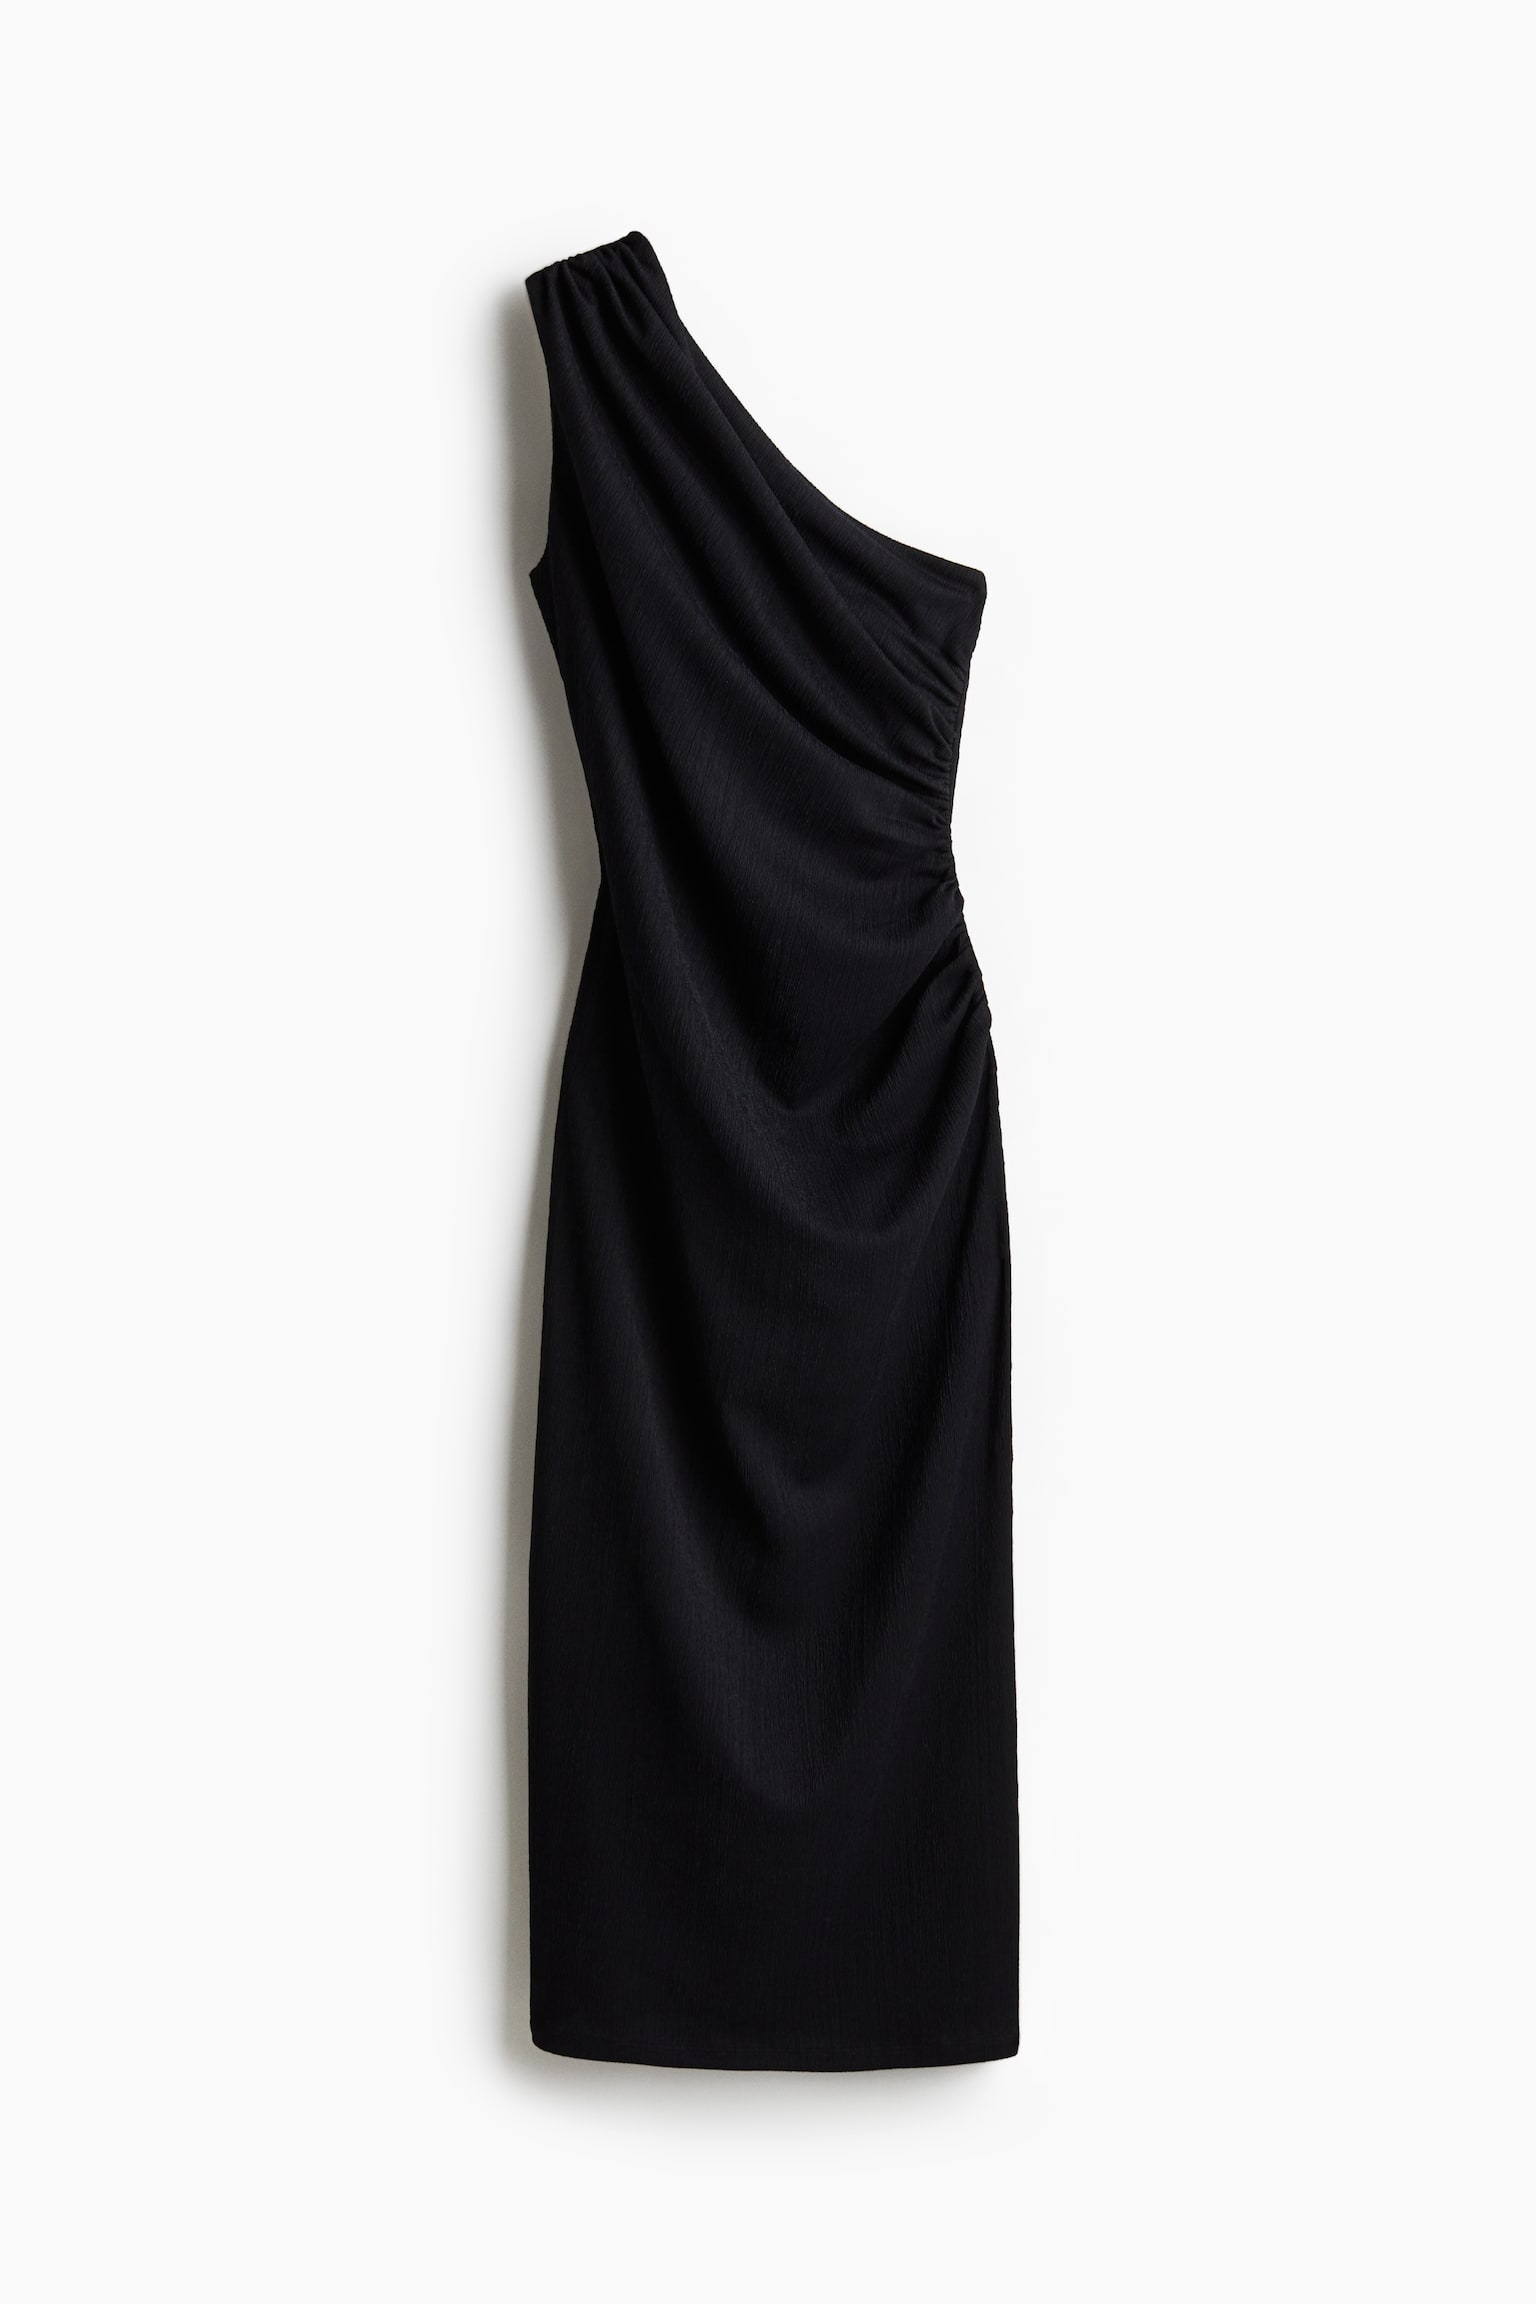 Robe asymétrique froncée - Noir/Beige clair/motif noir/Beige foncé - 2